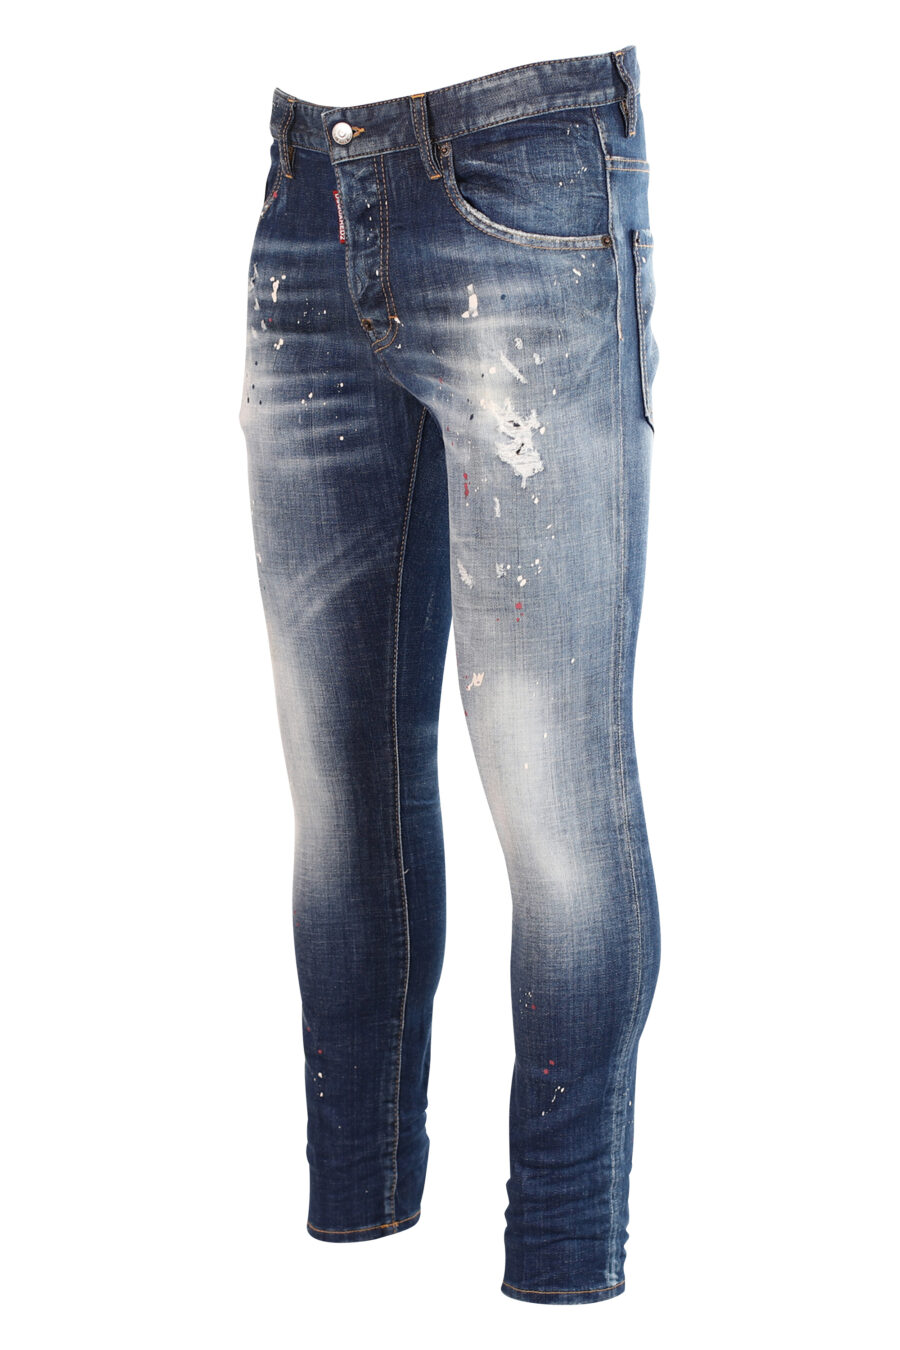 Pantalón vaquero "skater" azul semi desgastado con pintura y rotos - 8052134940020 2